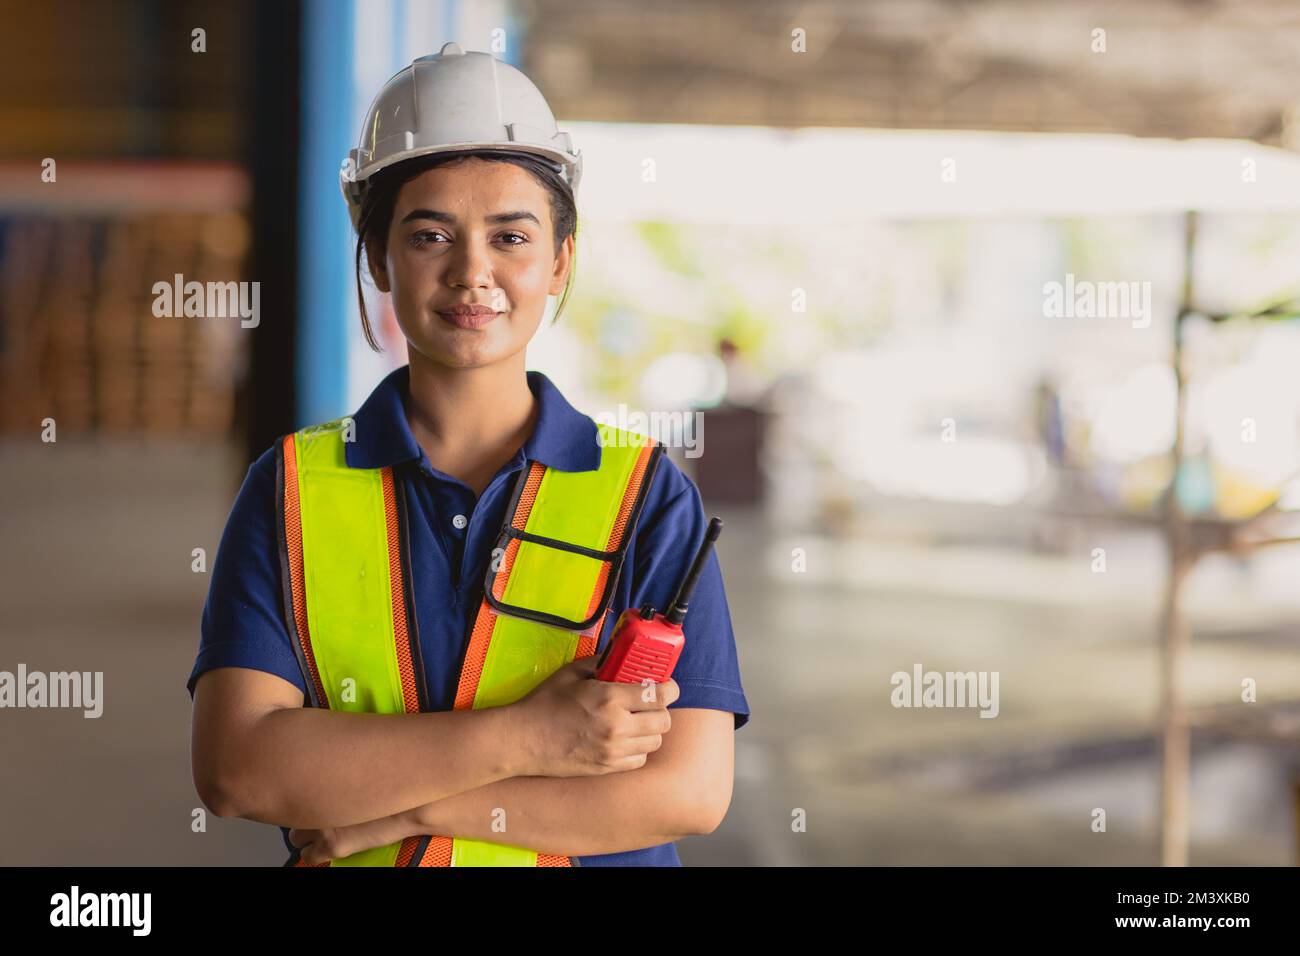 Ritratto donna indiana lavoratore supervisore intelligente sicuro look con tuta di sicurezza ingegnere lavoro in grande fabbrica magazzino industria Foto Stock